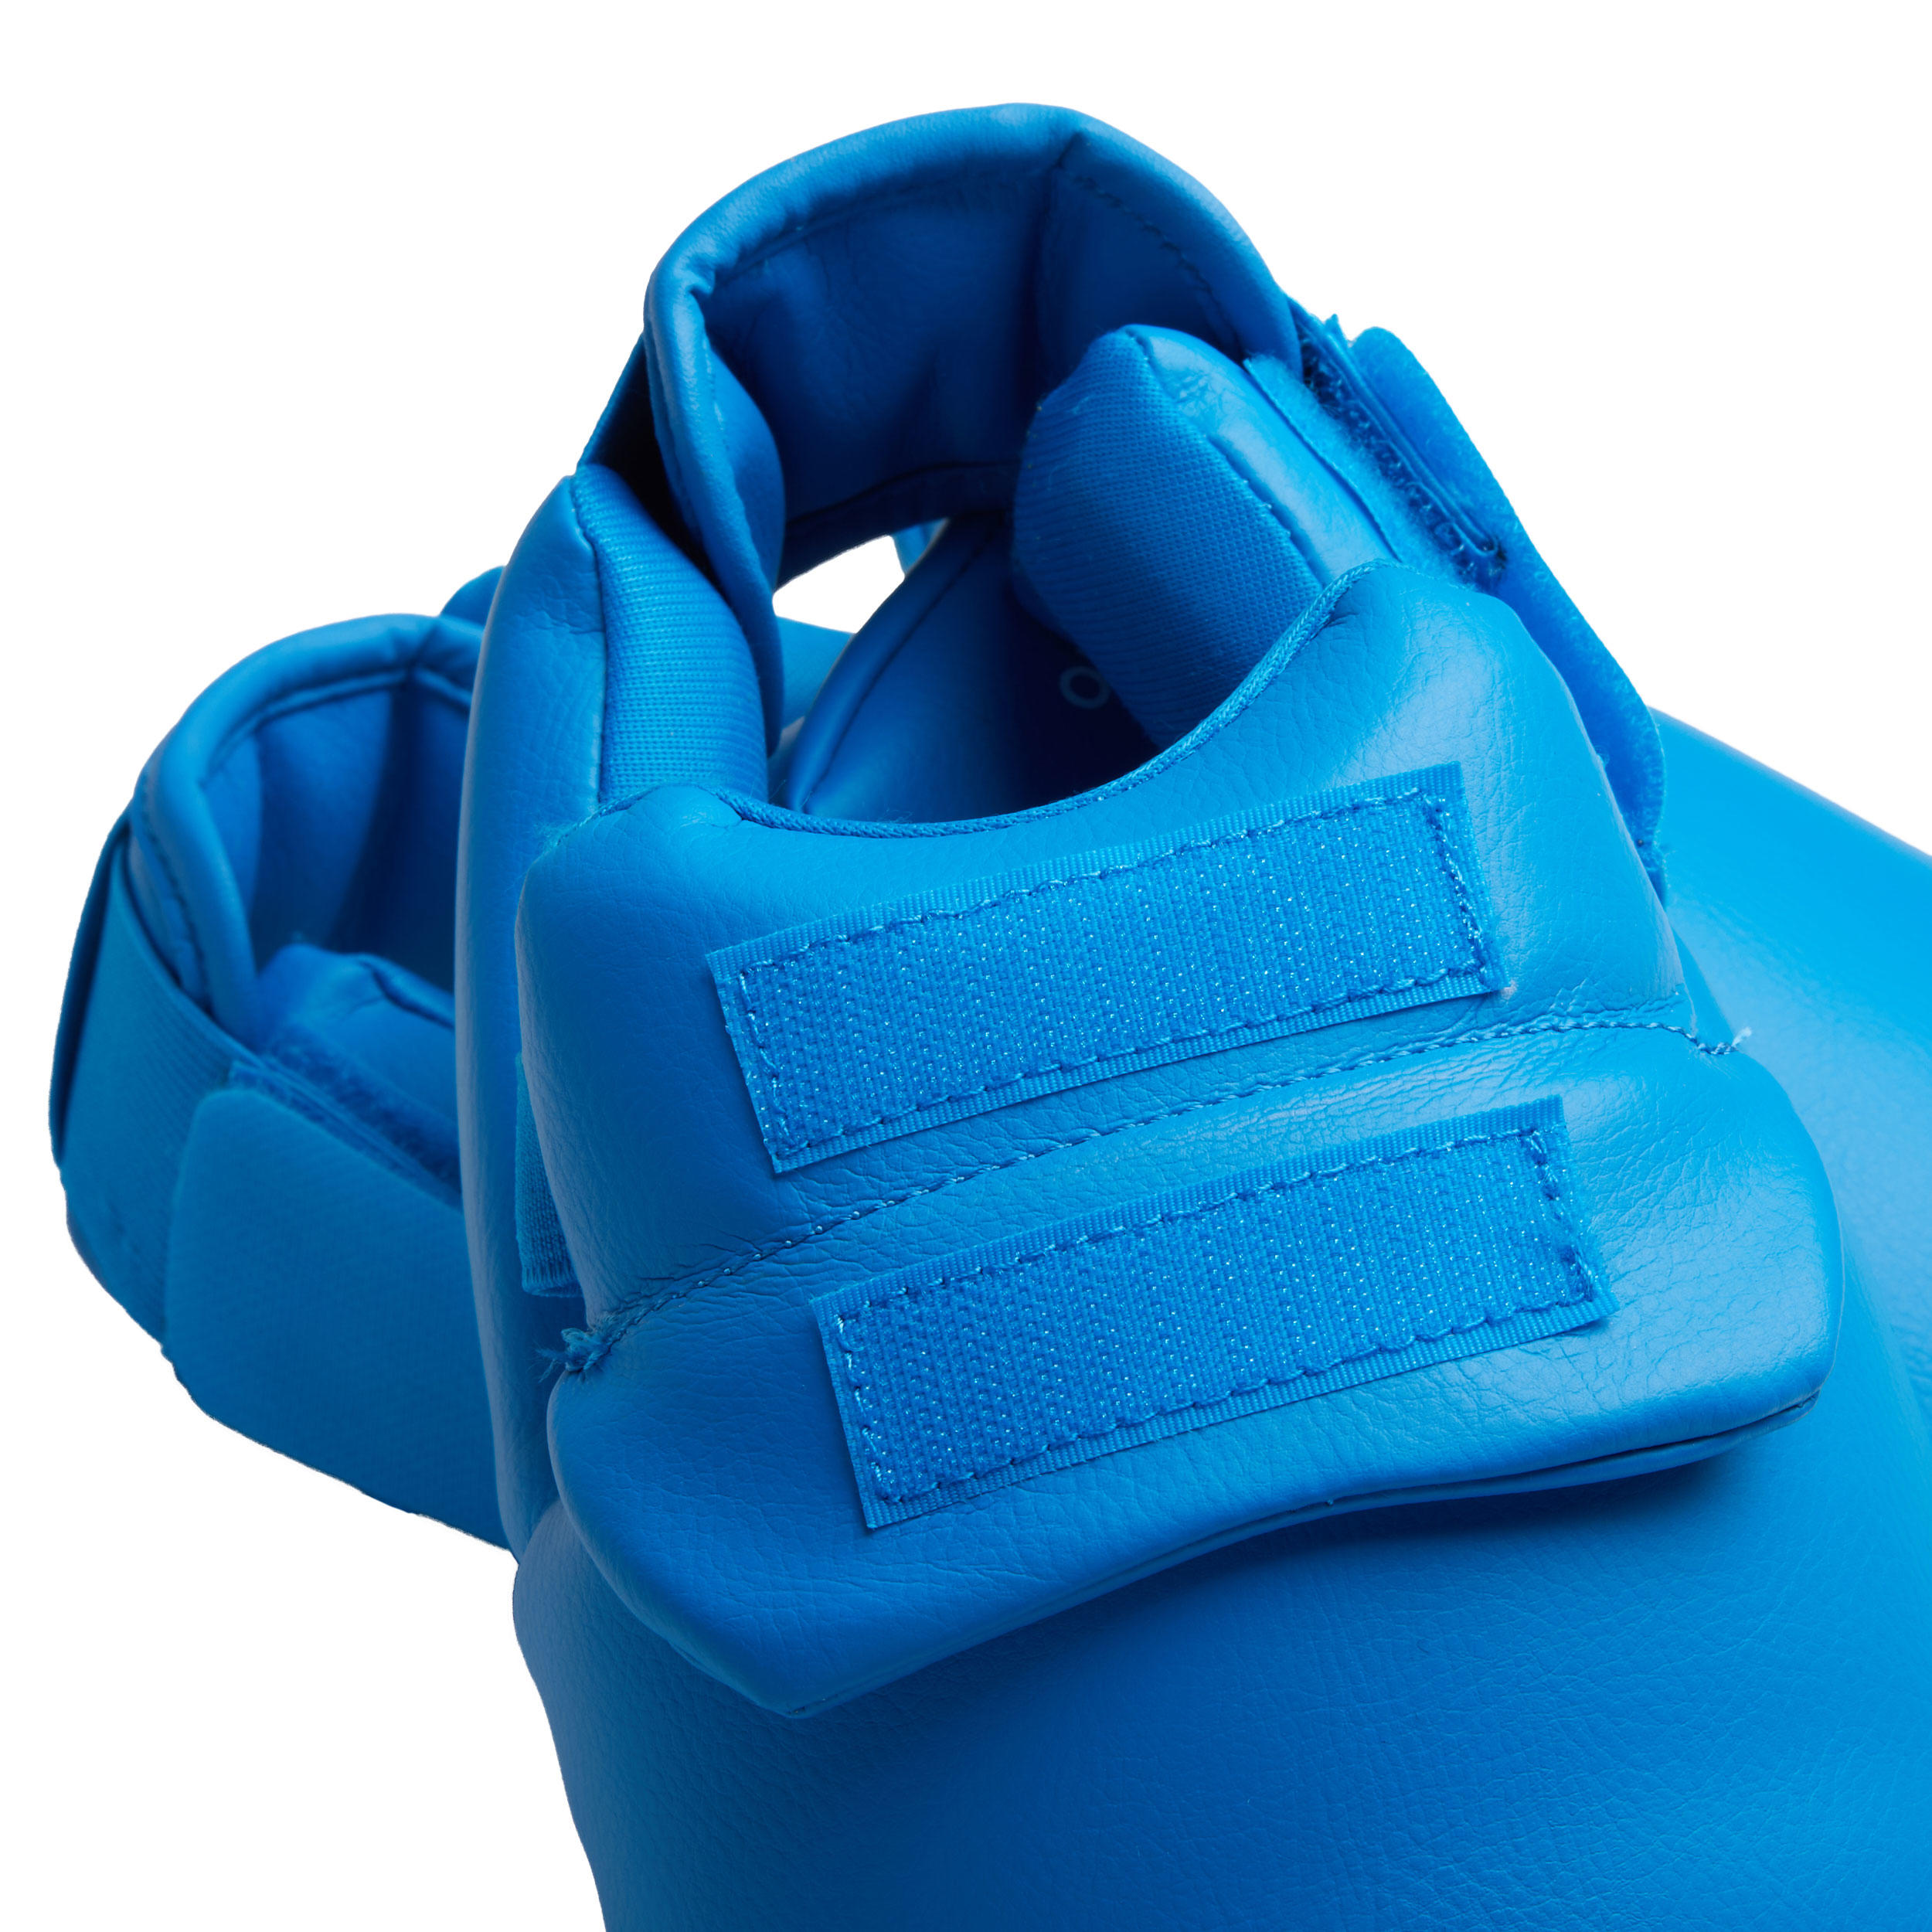 Karate Shin/Foot Guard 900 - Blue 9/13